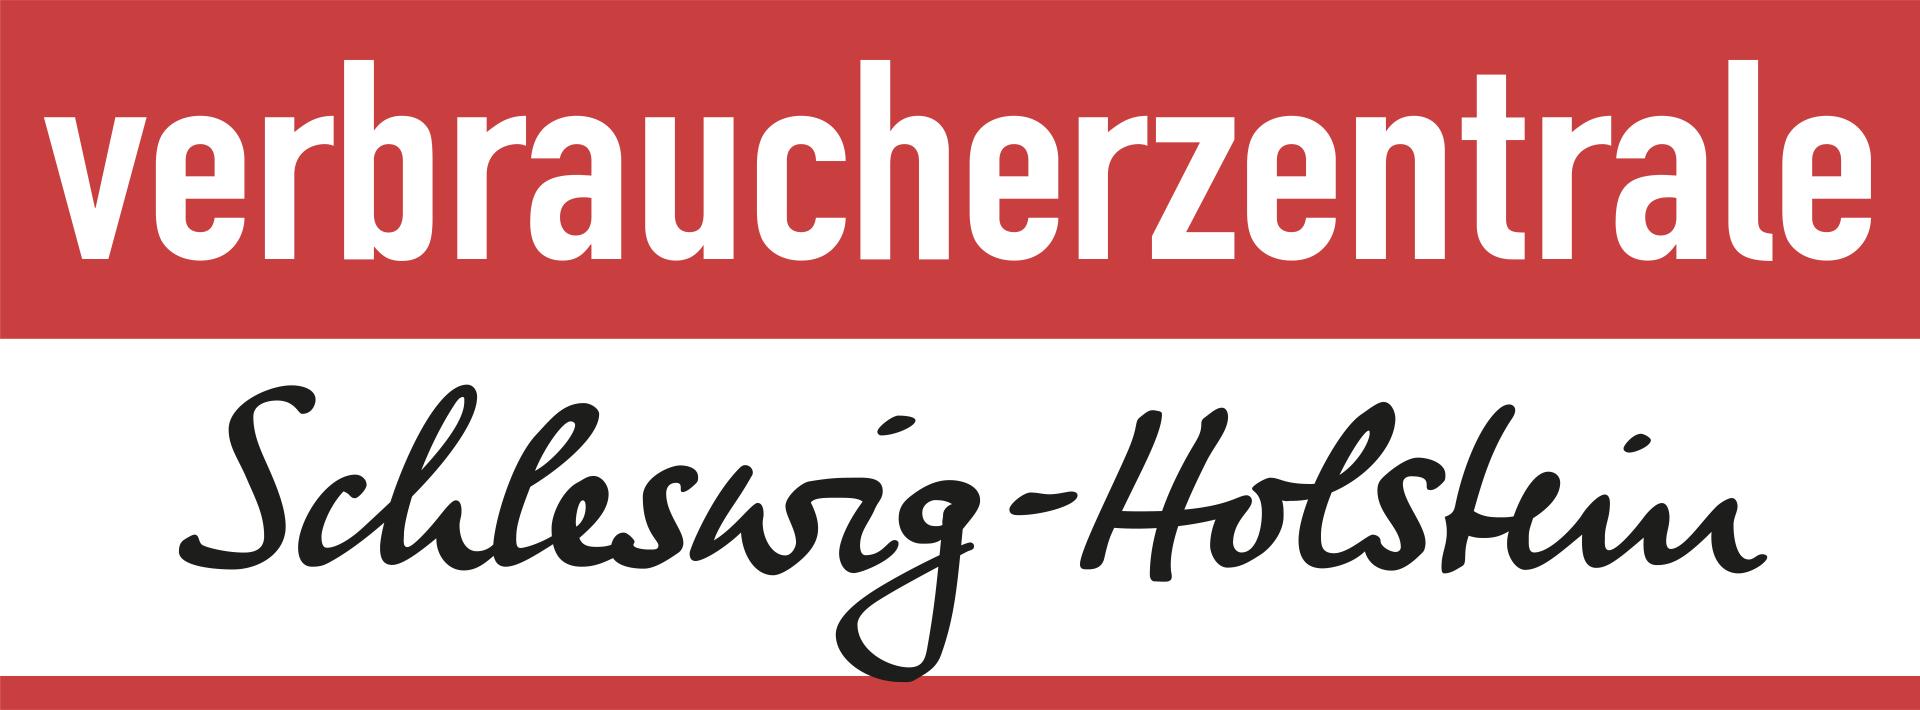 линк на сайт Verbraucherzentrale Schleswig-Holstein (открывается в новом окне)